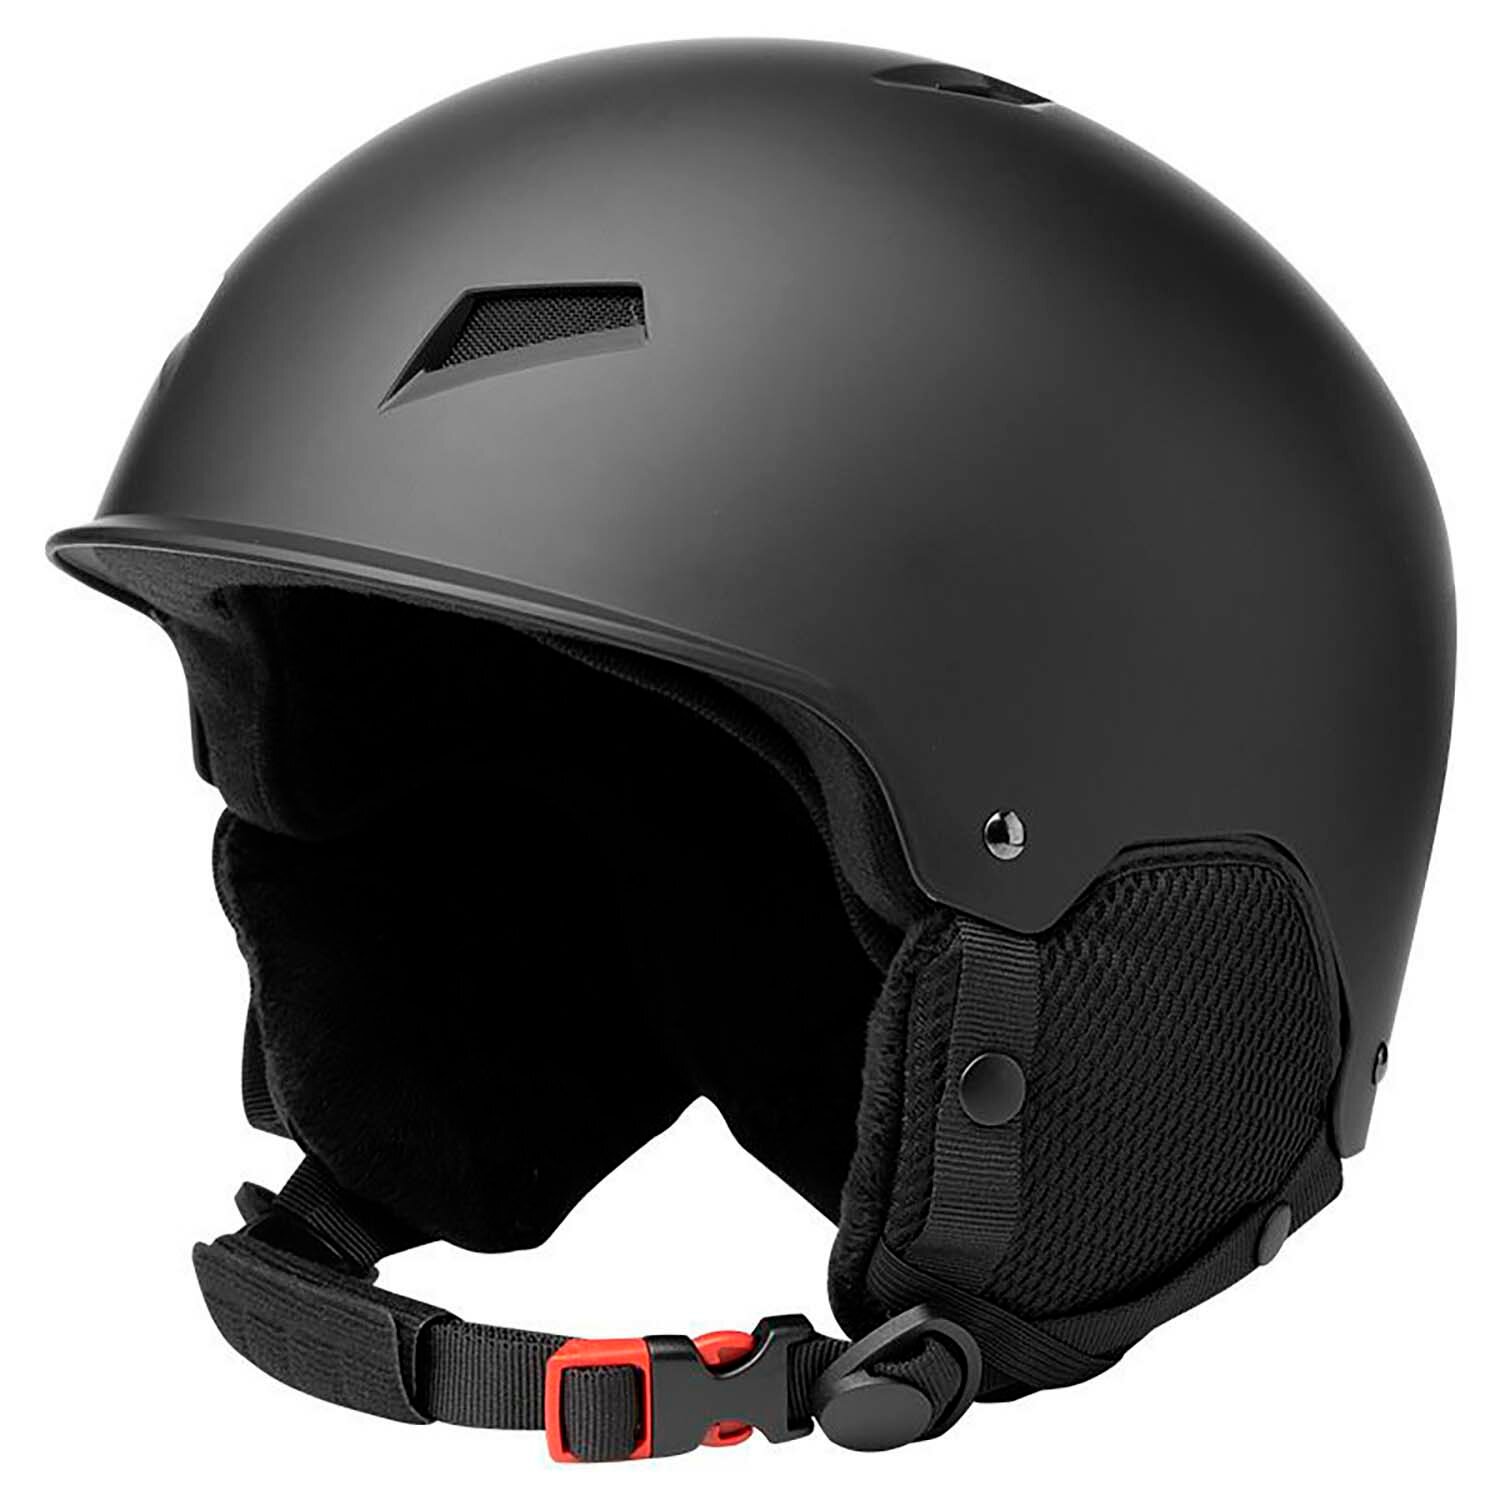 Лыжный шлем с наушниками Gearup M